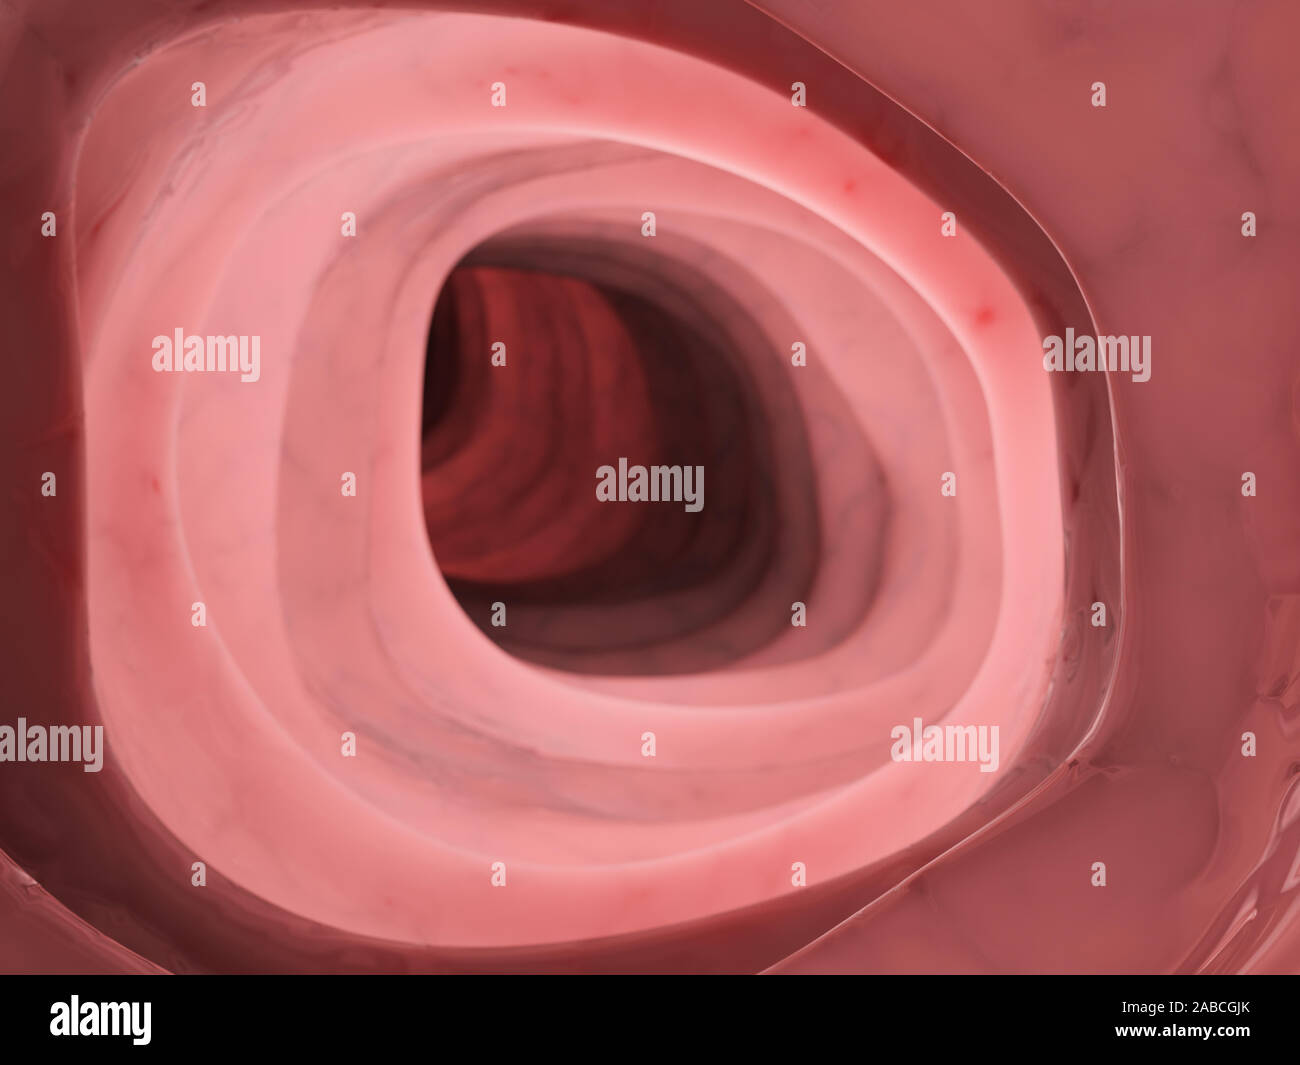 3D prestados ilustración médica precisa del interior del colon humano Foto de stock